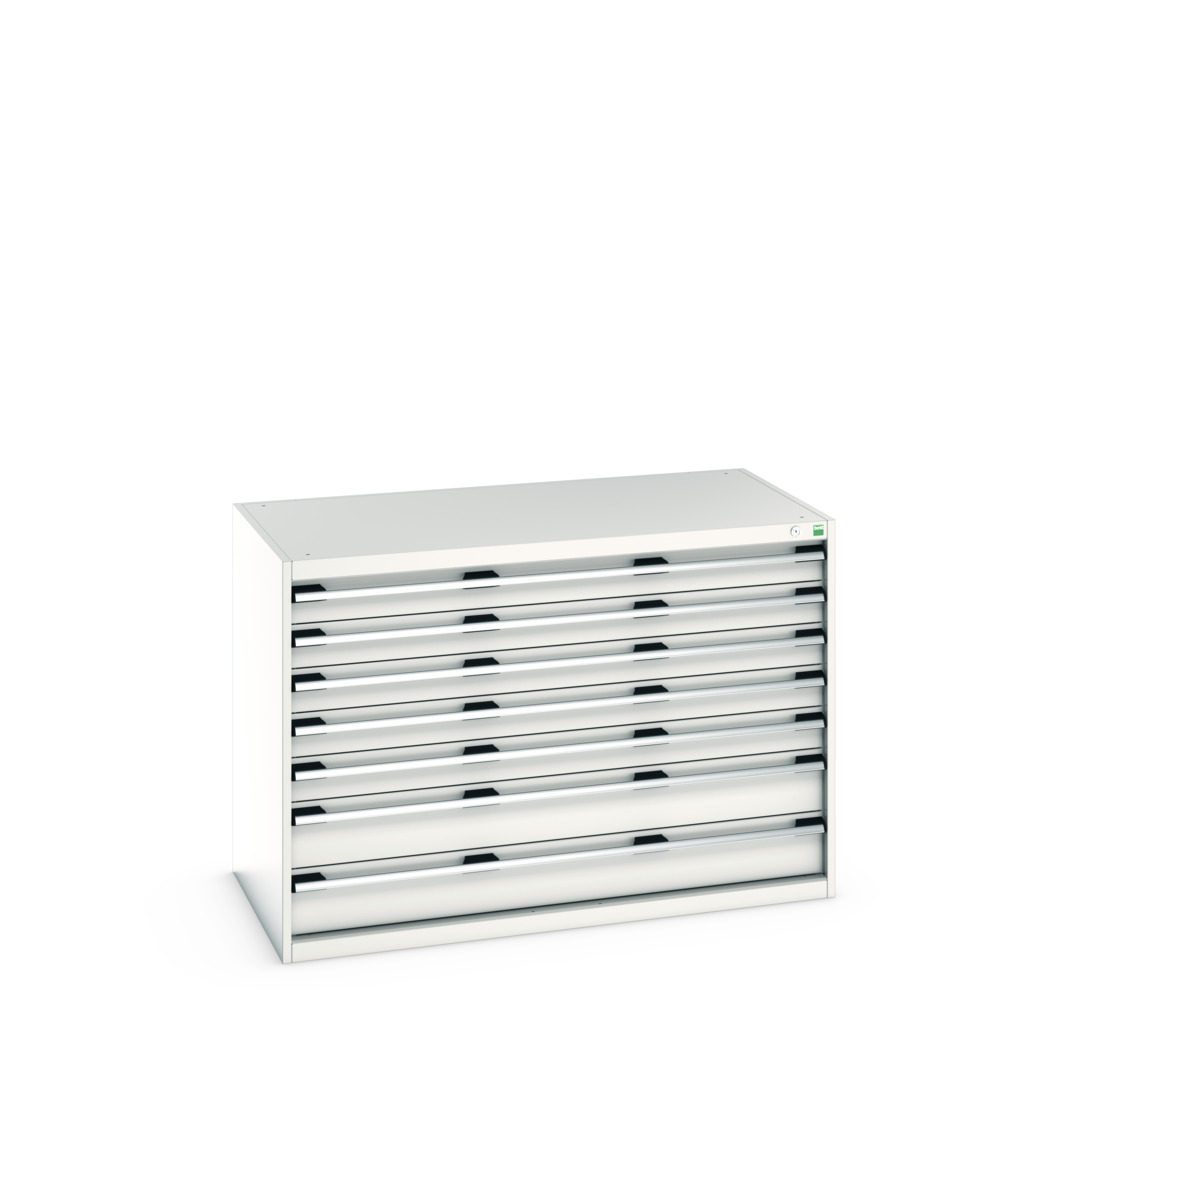 40030087.16V - cubio drawer cabinet